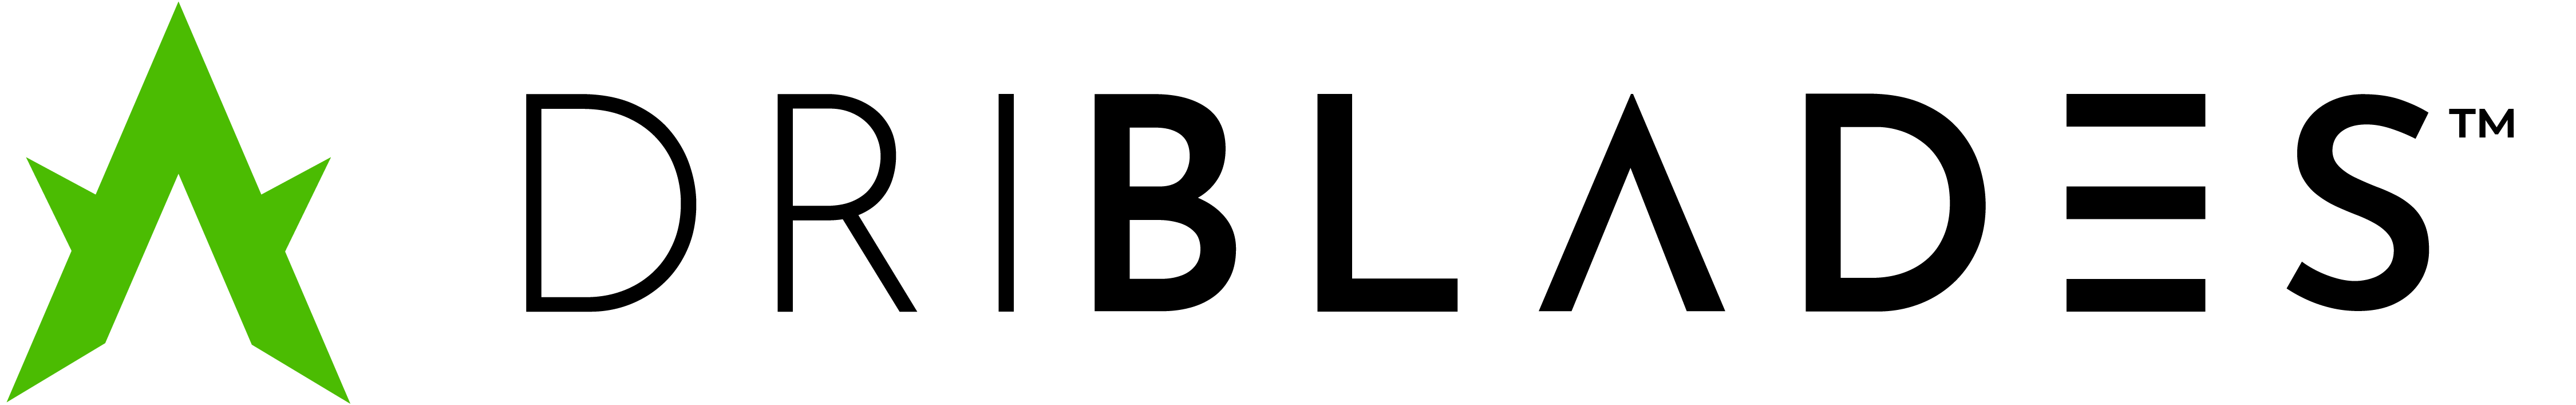 Driblades-Logo-Color-TM